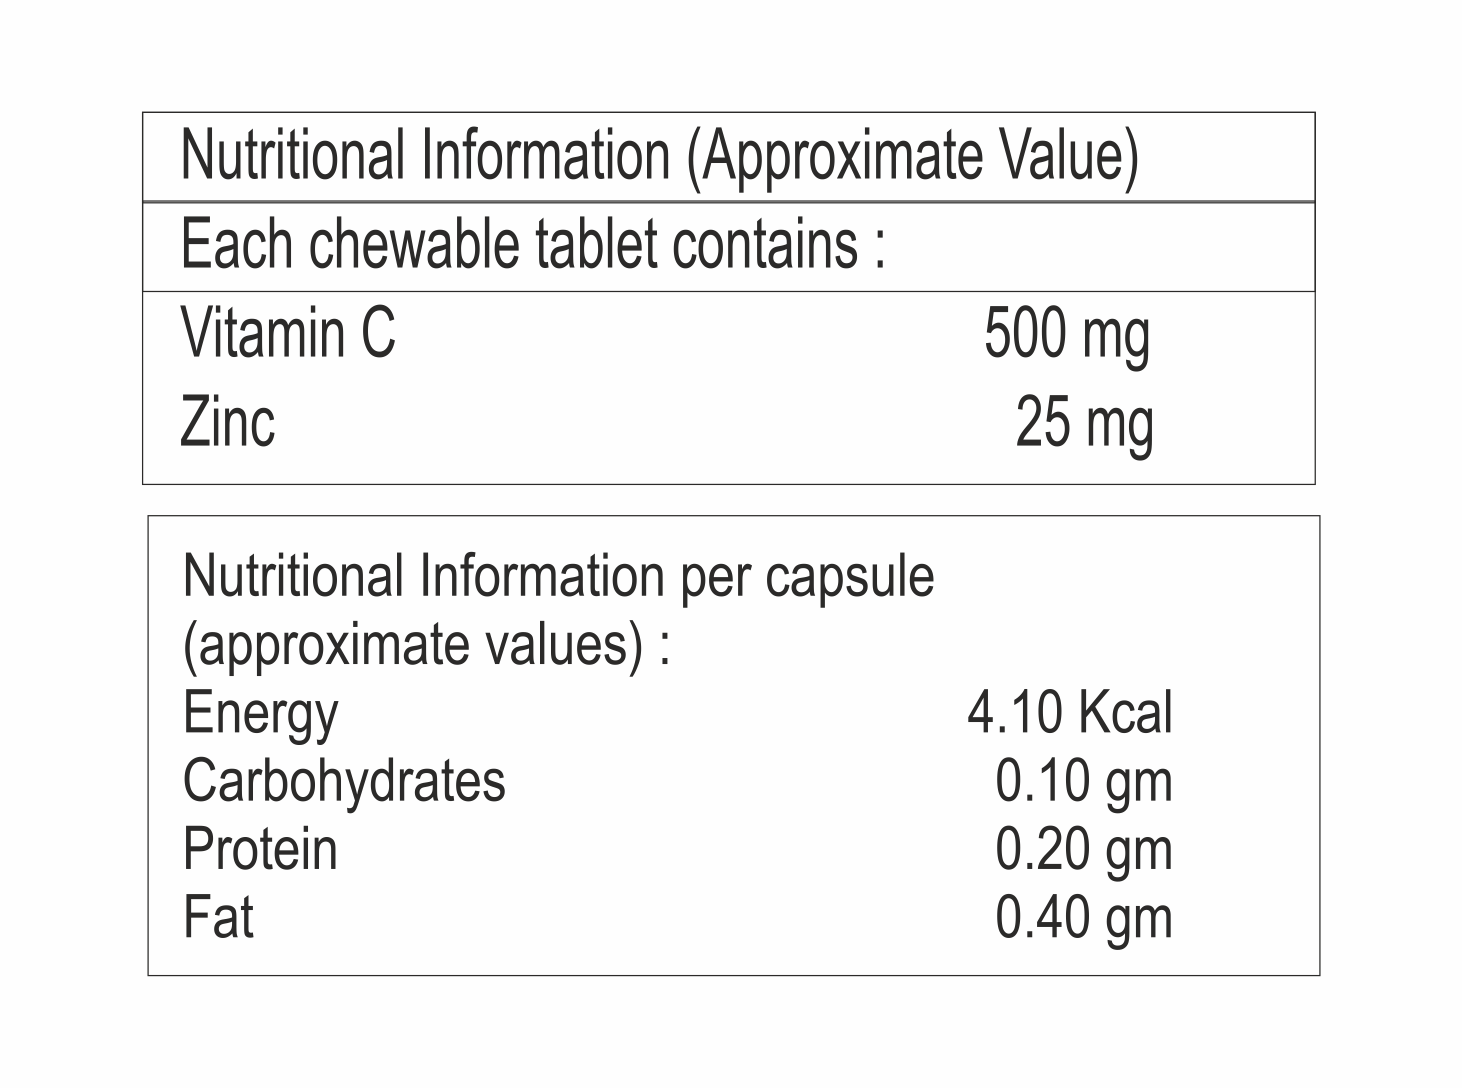 Vitamin C and Zinc  Tablet